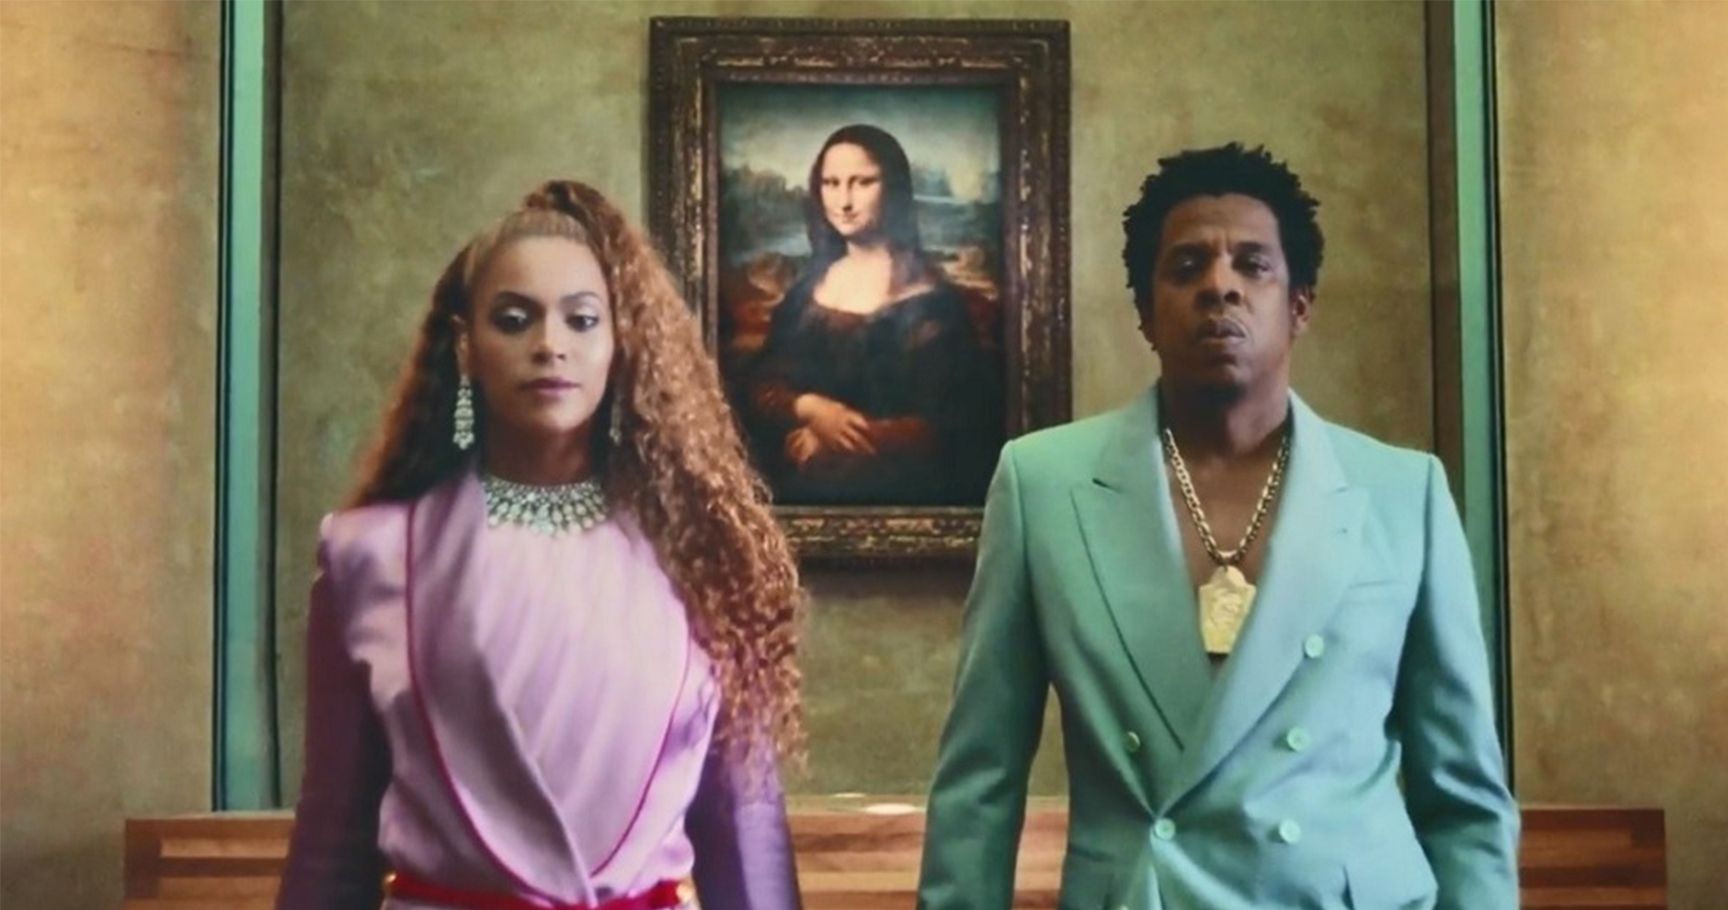 20 reações hilariantemente extras ao álbum conjunto de Beyoncé e Jay-Z